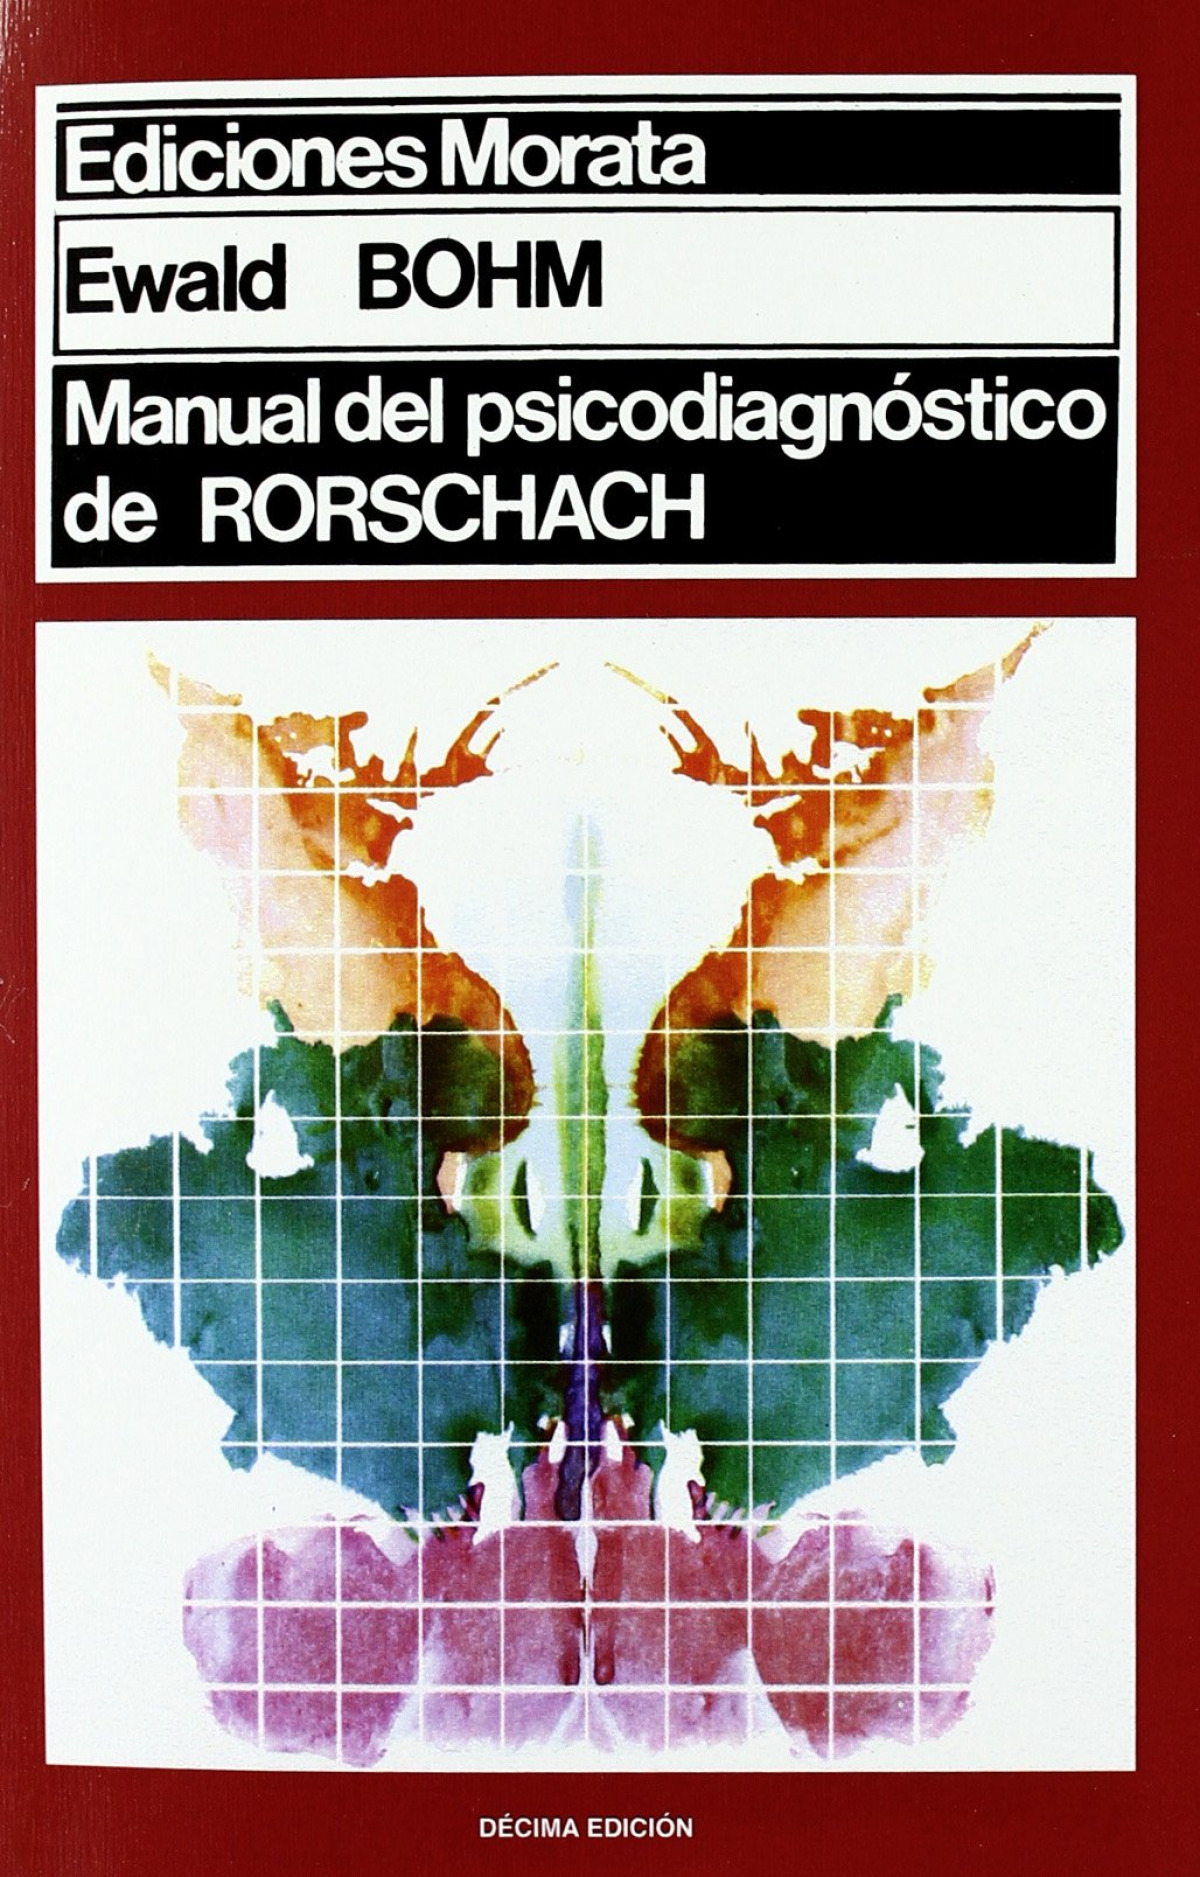 Manual psicodiagnostico rorschach - Bohm, E.